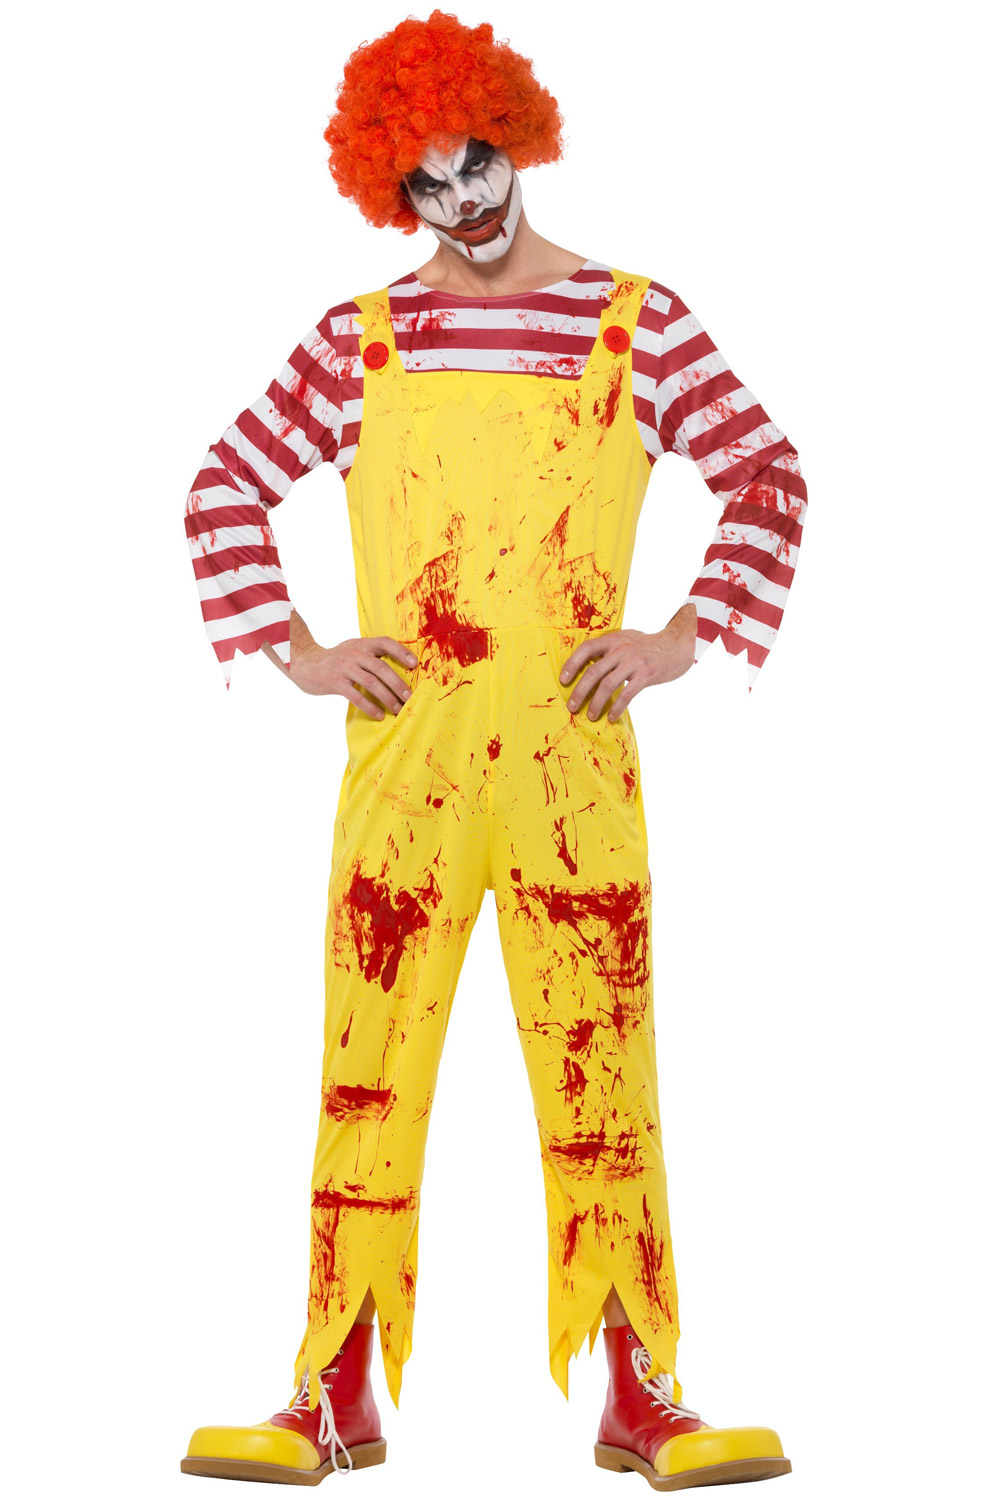 evil clown, ronald mcdonald, mcdonald's, mcdonalds, fast food characte...